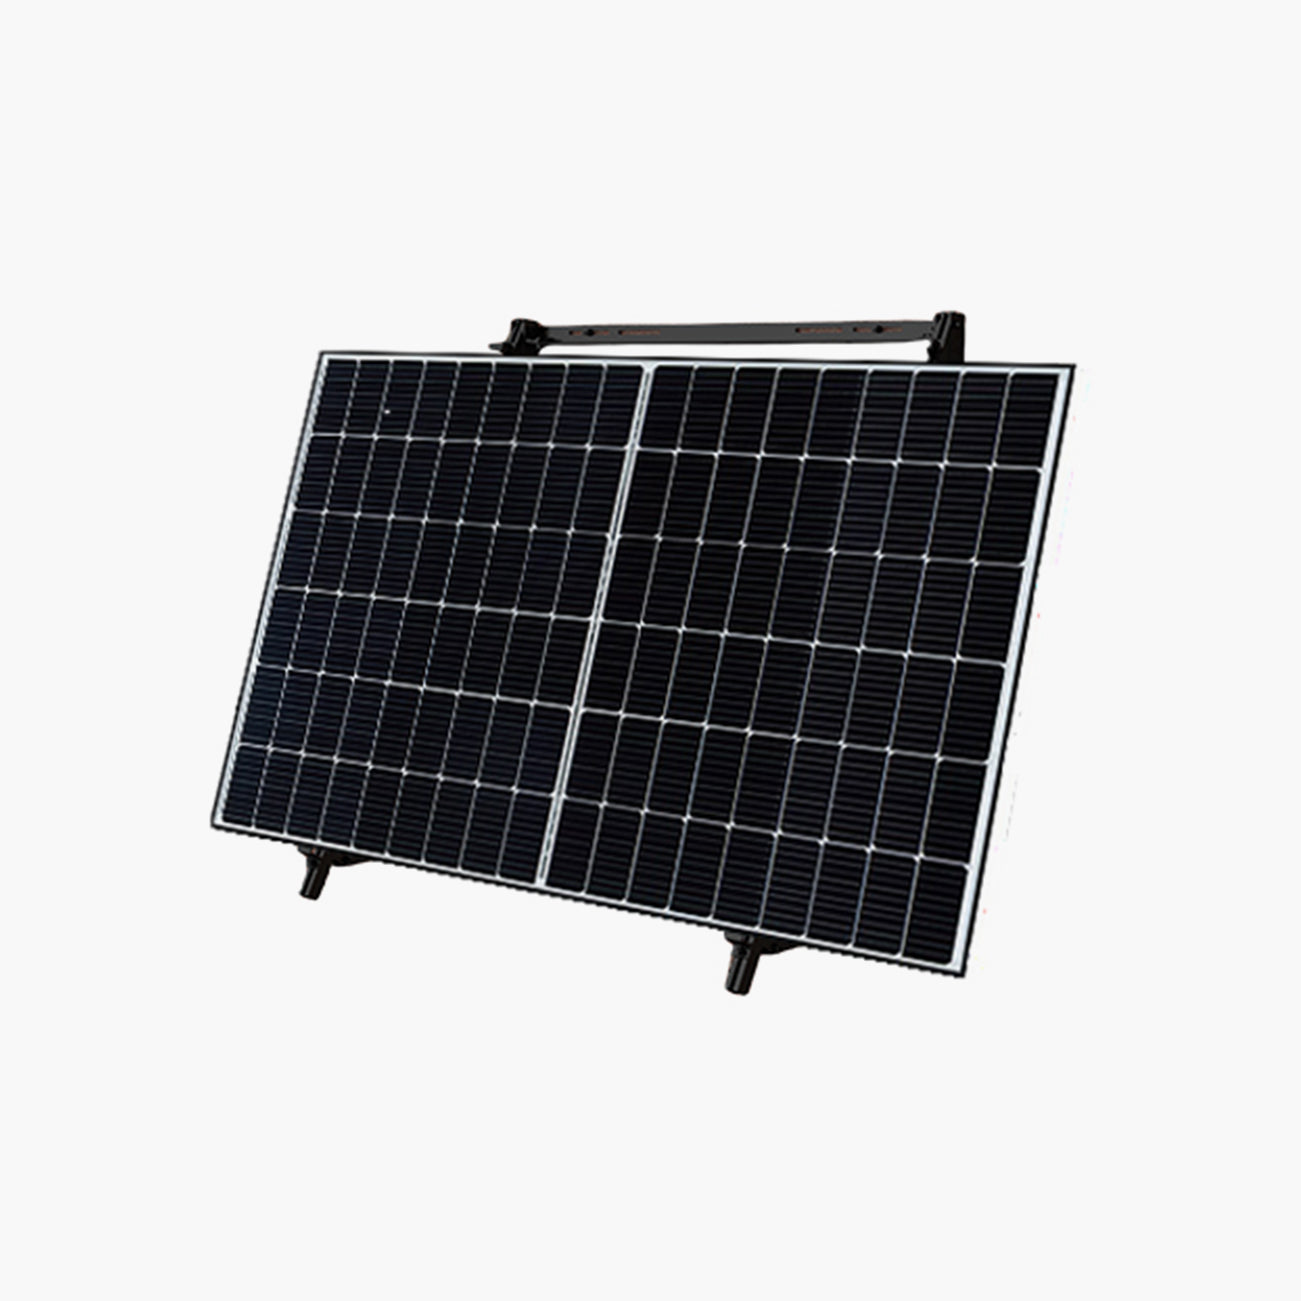 2 Painéis Solares de Chão (2x425W) com Inversor 800W e Suportes de Fixação